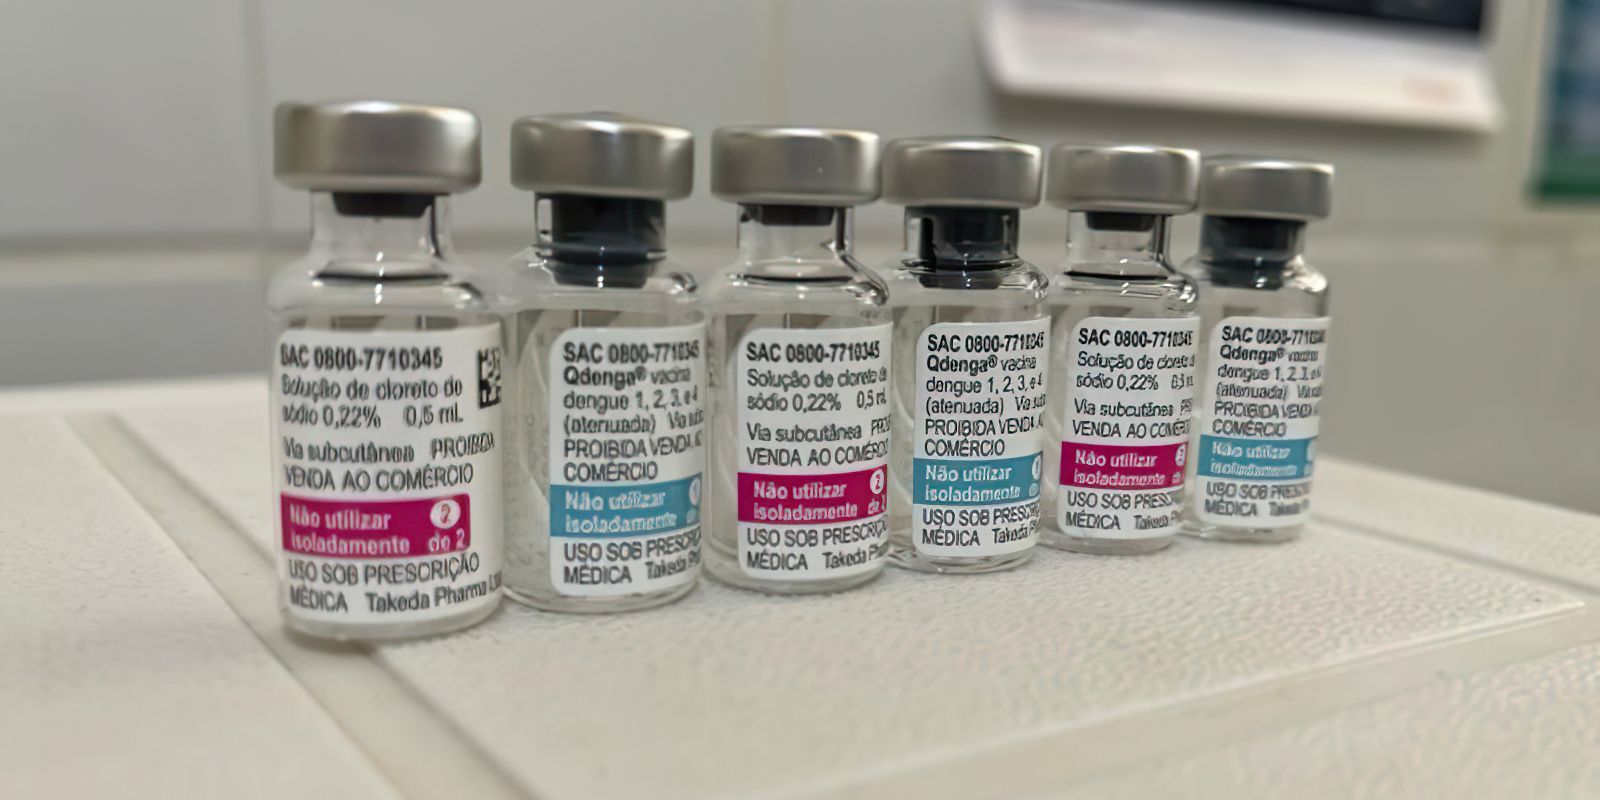 Em MS, município de Dourados inicia vacinação em massa contra dengue